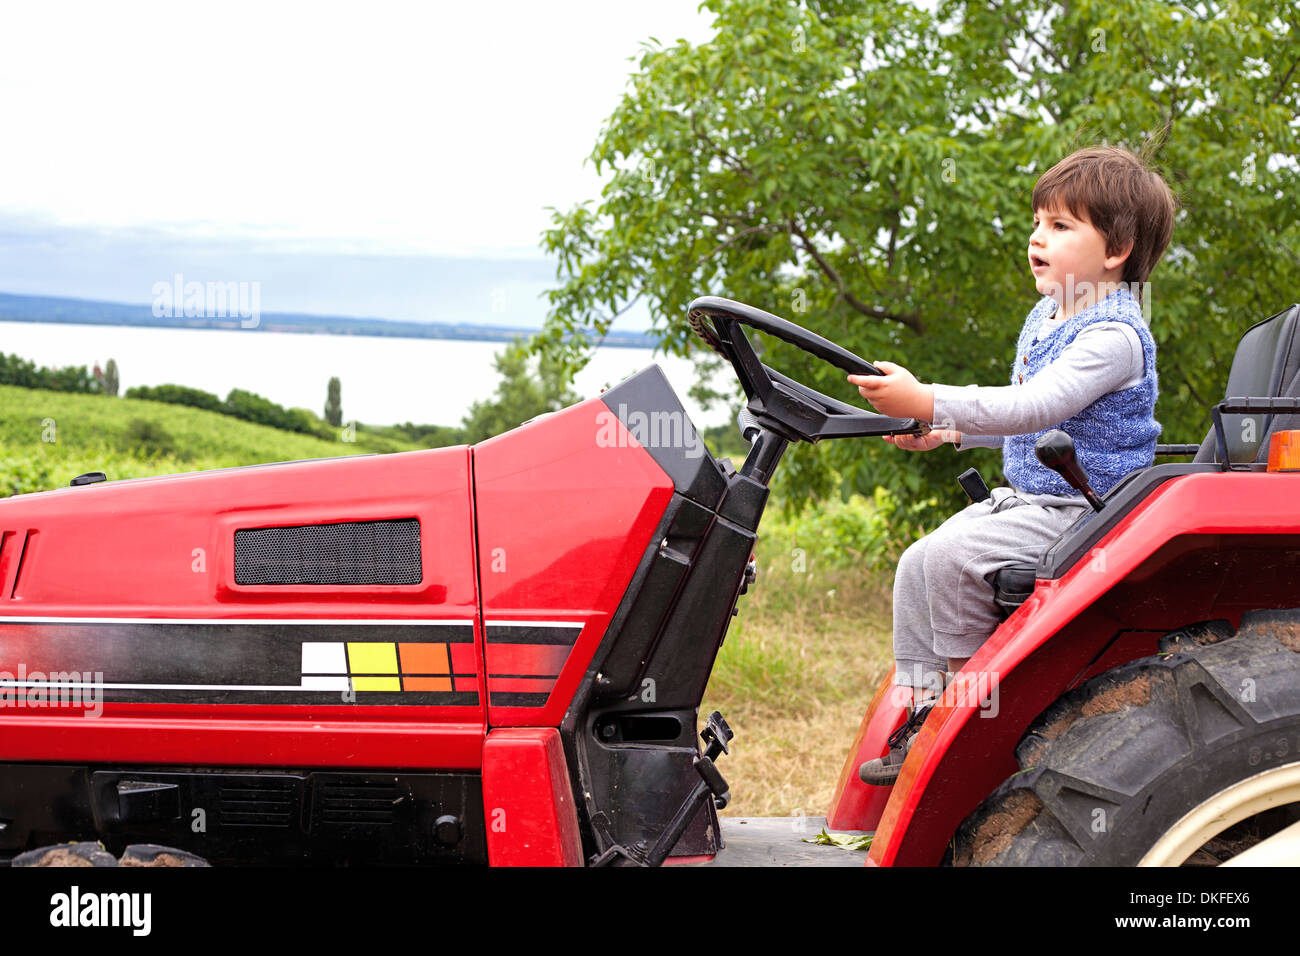 Niño varón pretendiendo conducir el tractor de jardín Foto de stock